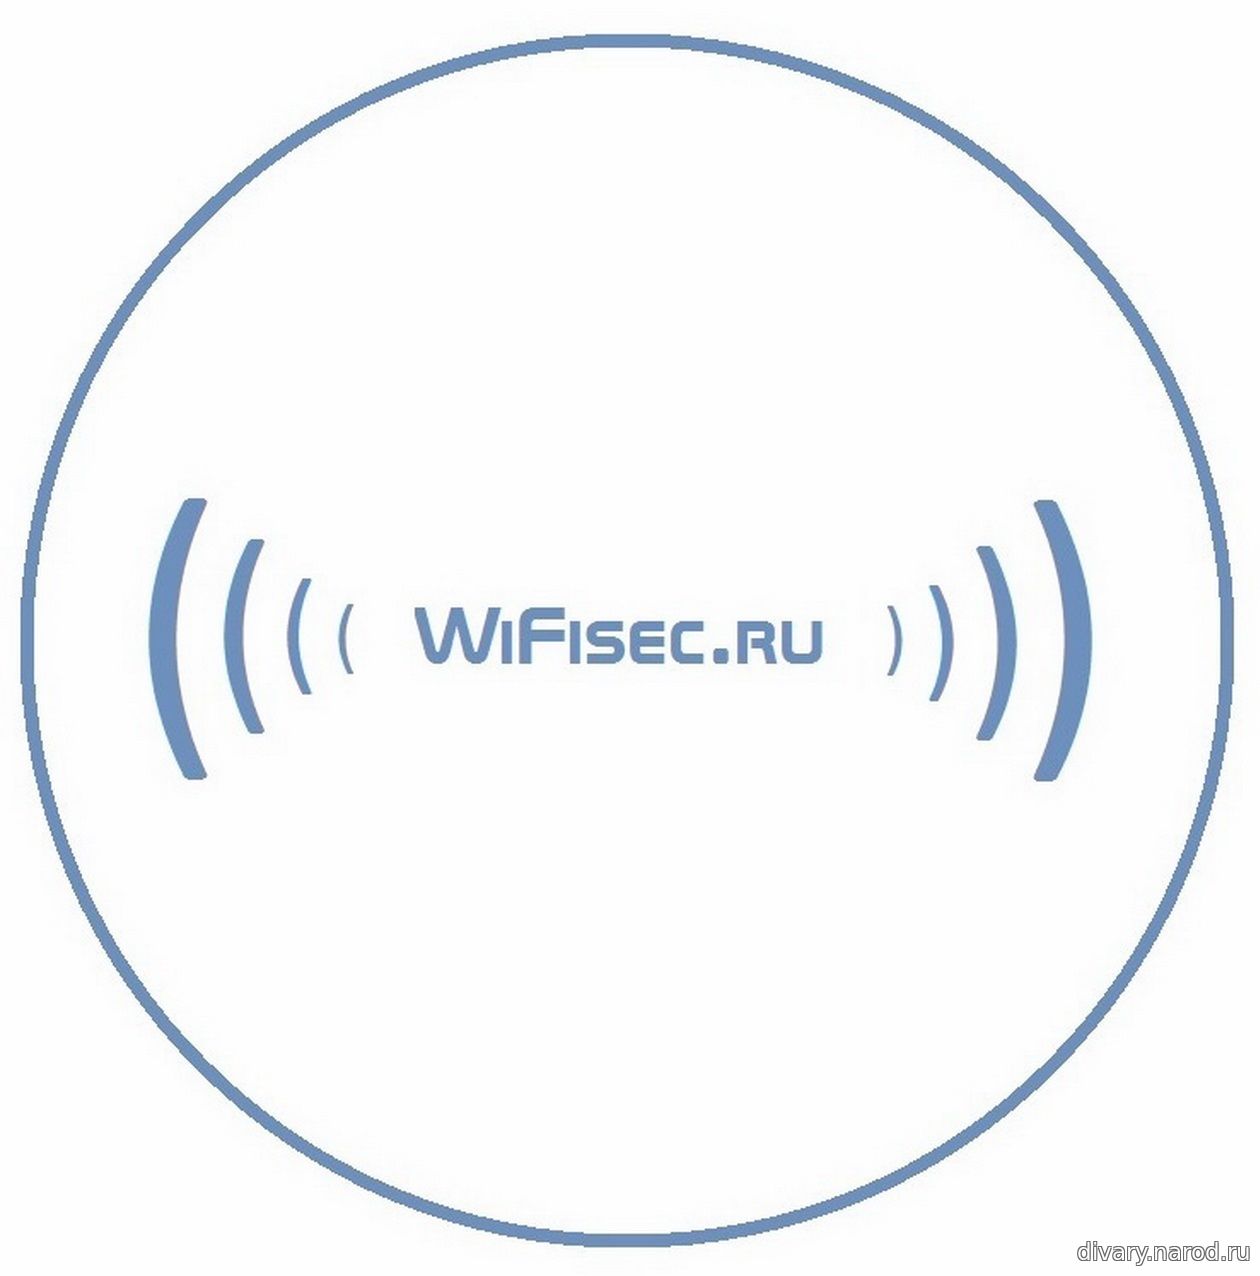 wifisec.ru перейти на сайт